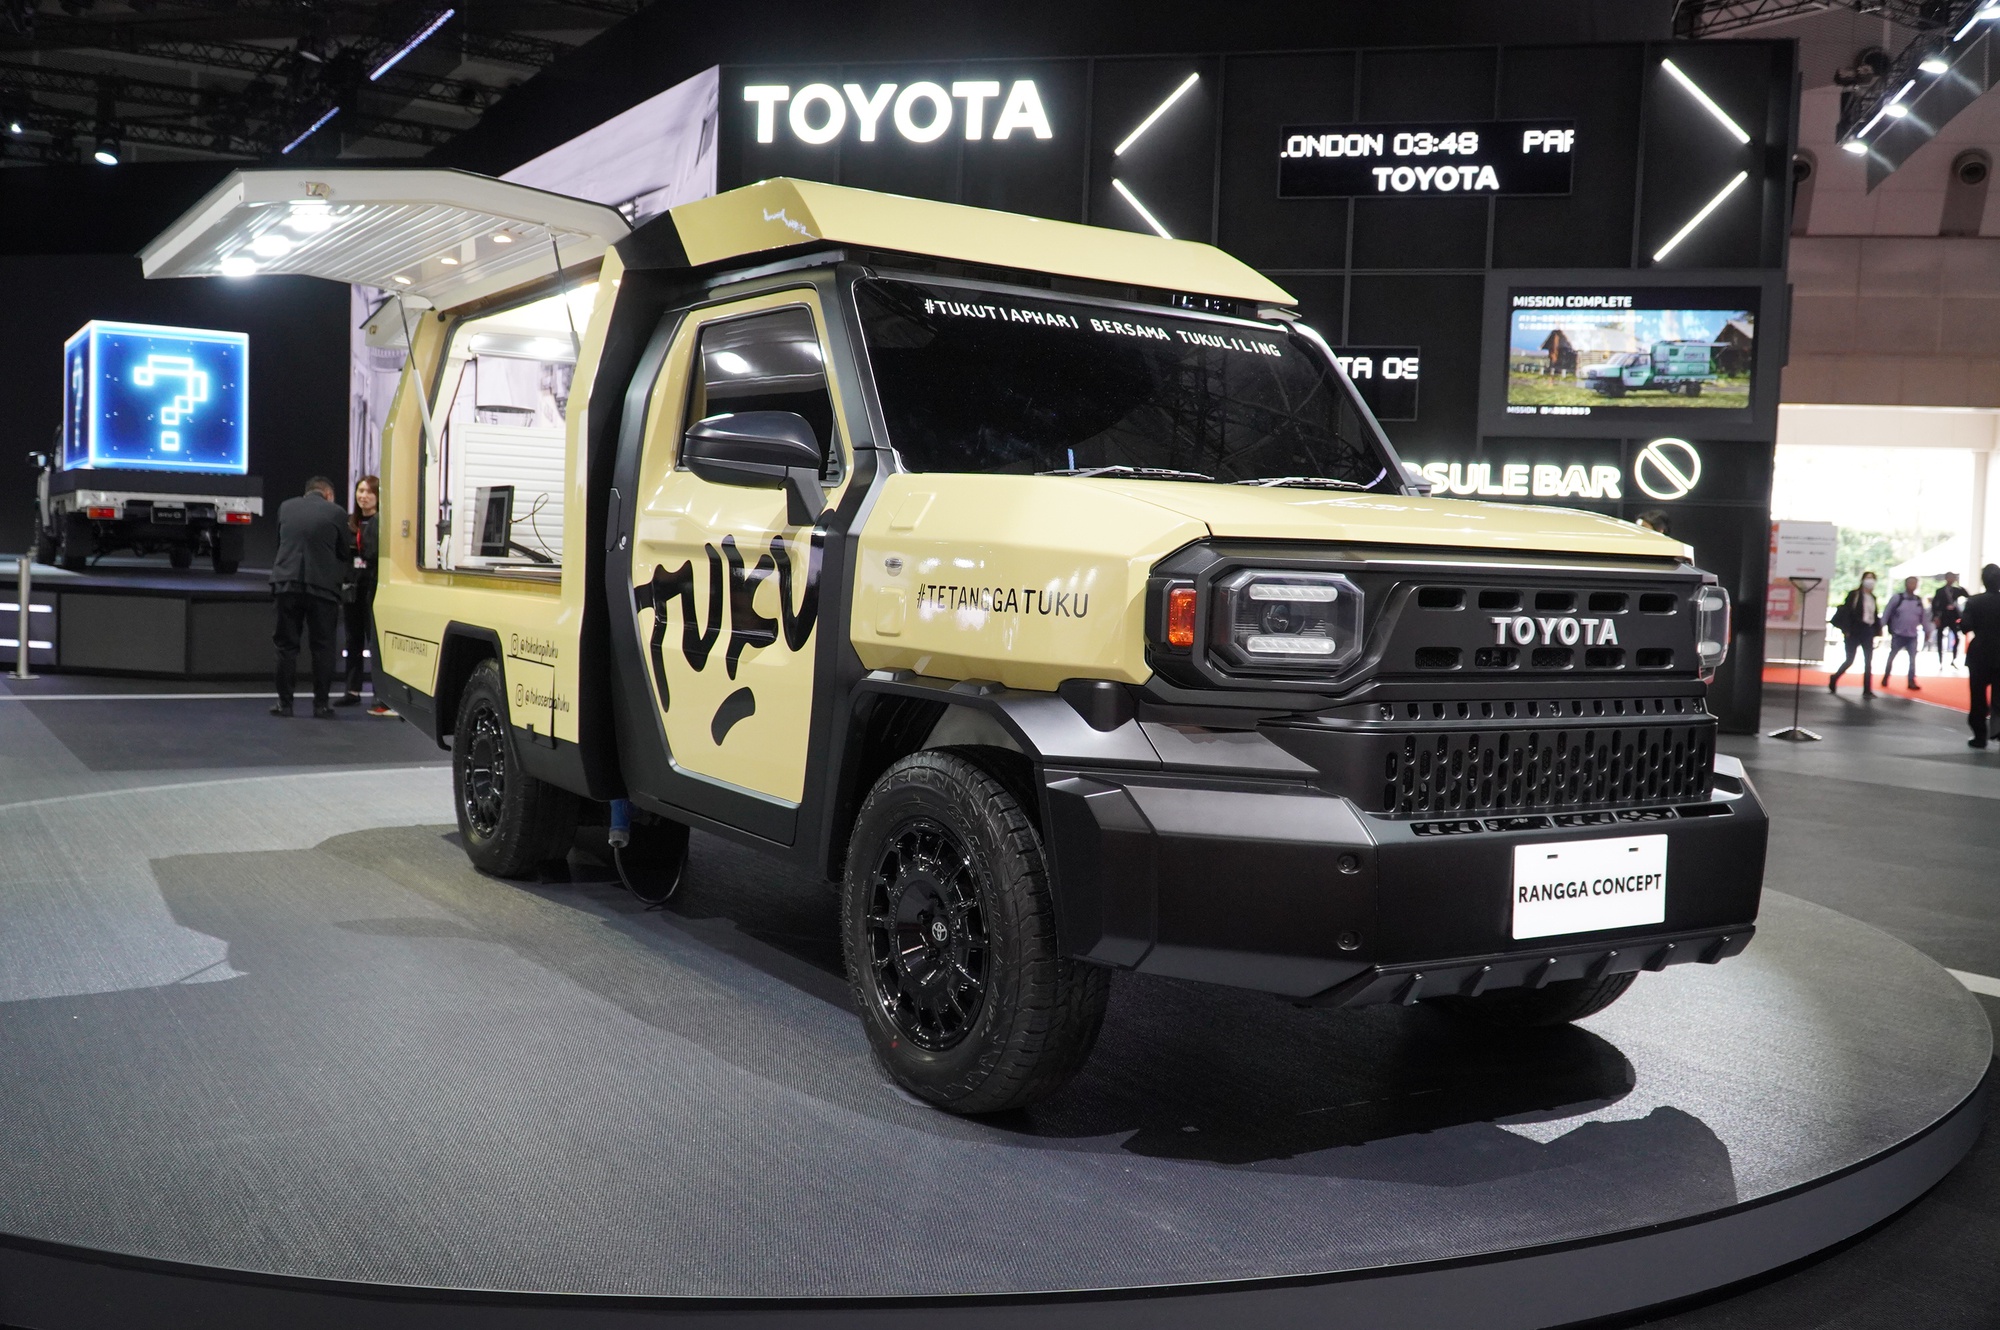 Toyota Rangga 'biến hình' như tắc kè,ếnhìnhnhưtắckègiáthấphơ<strong>dao phượt</strong> giá rẻ hơn Hilux   - Ảnh 1.